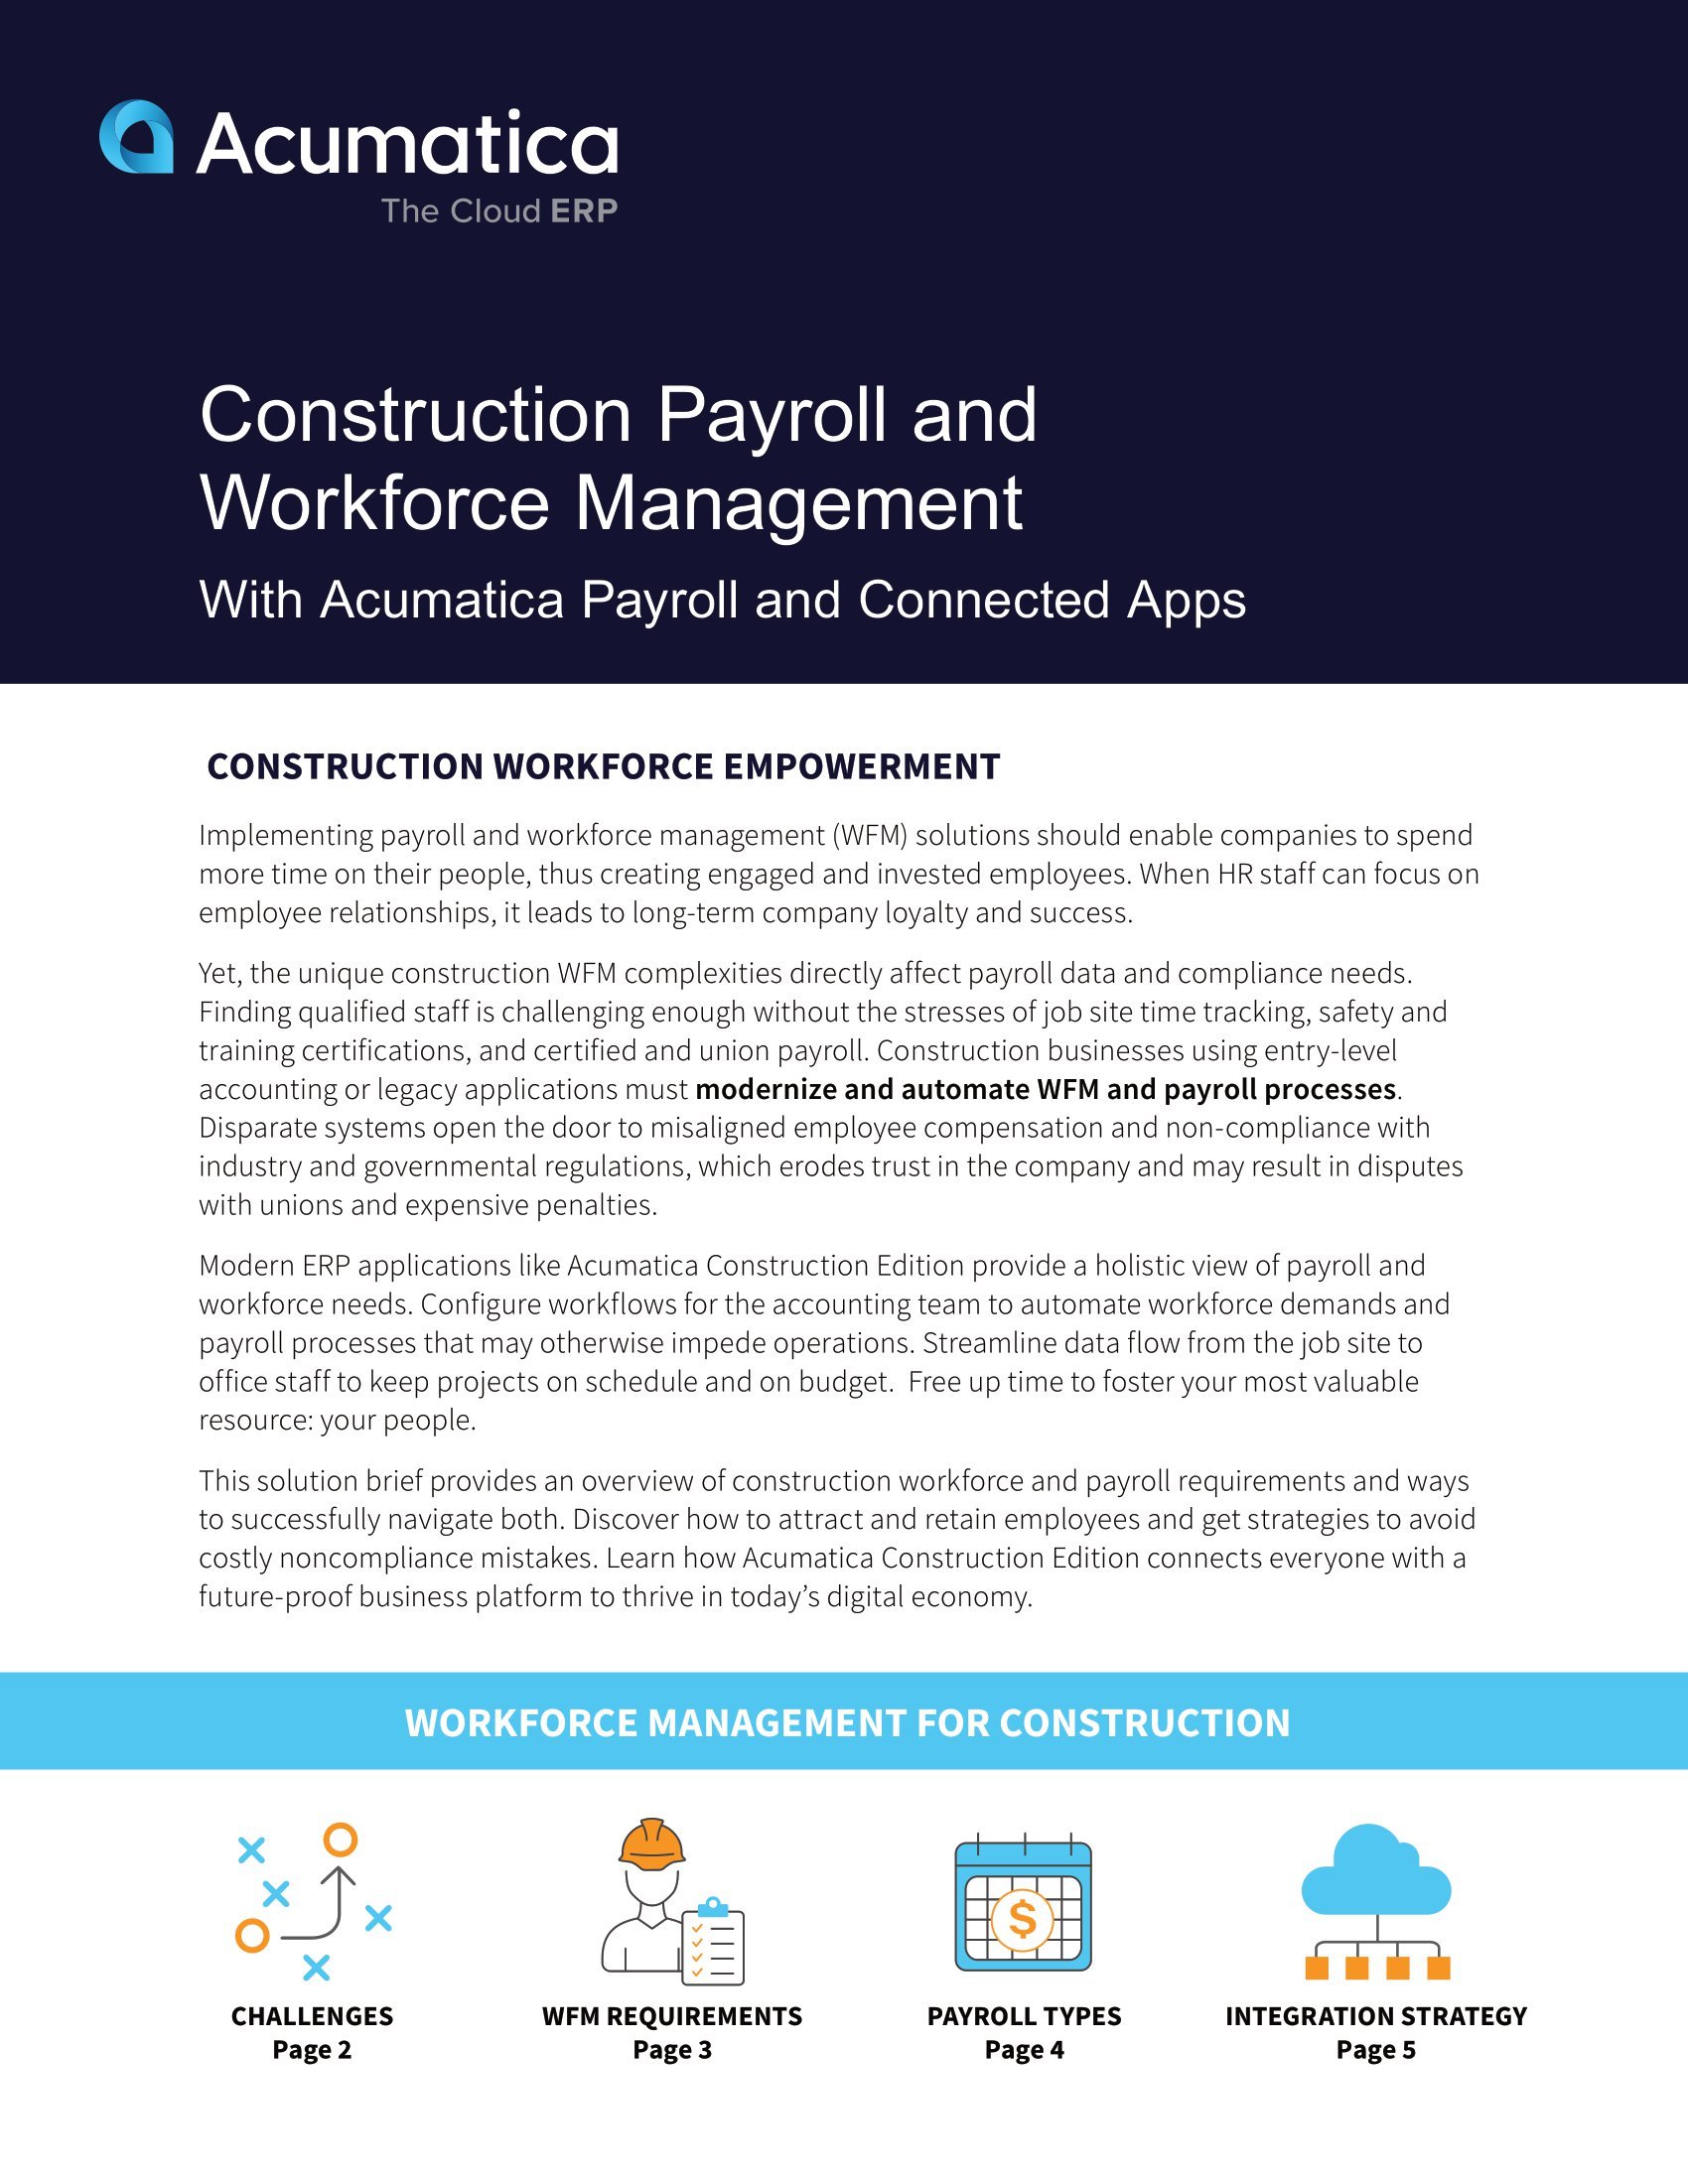 Éliminer les frustrations liées à la gestion de la main-d’œuvre et à la paie avec Acumatica Construction Edition